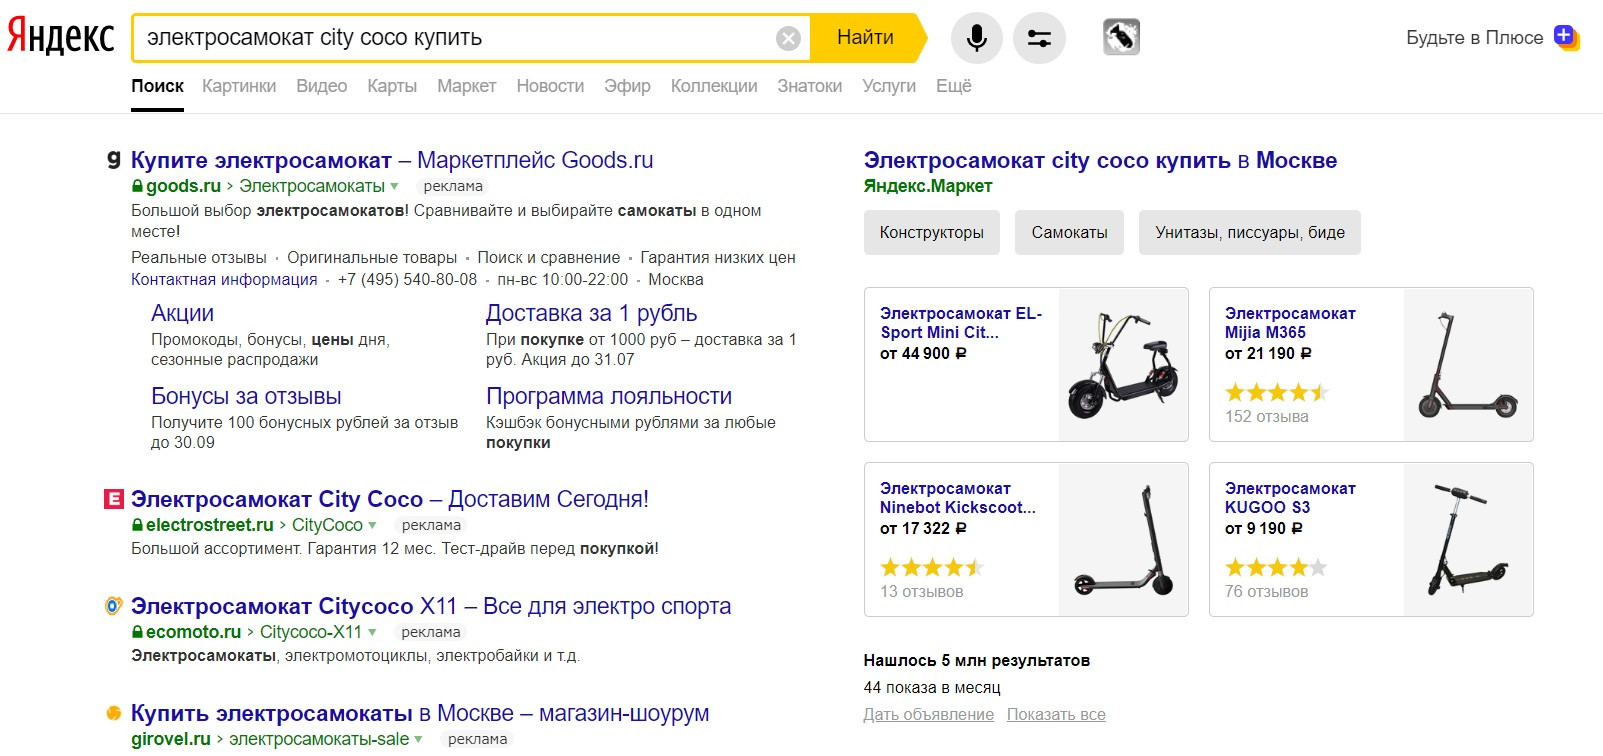 Яндекс-Маркет интернет-магазин позвонить